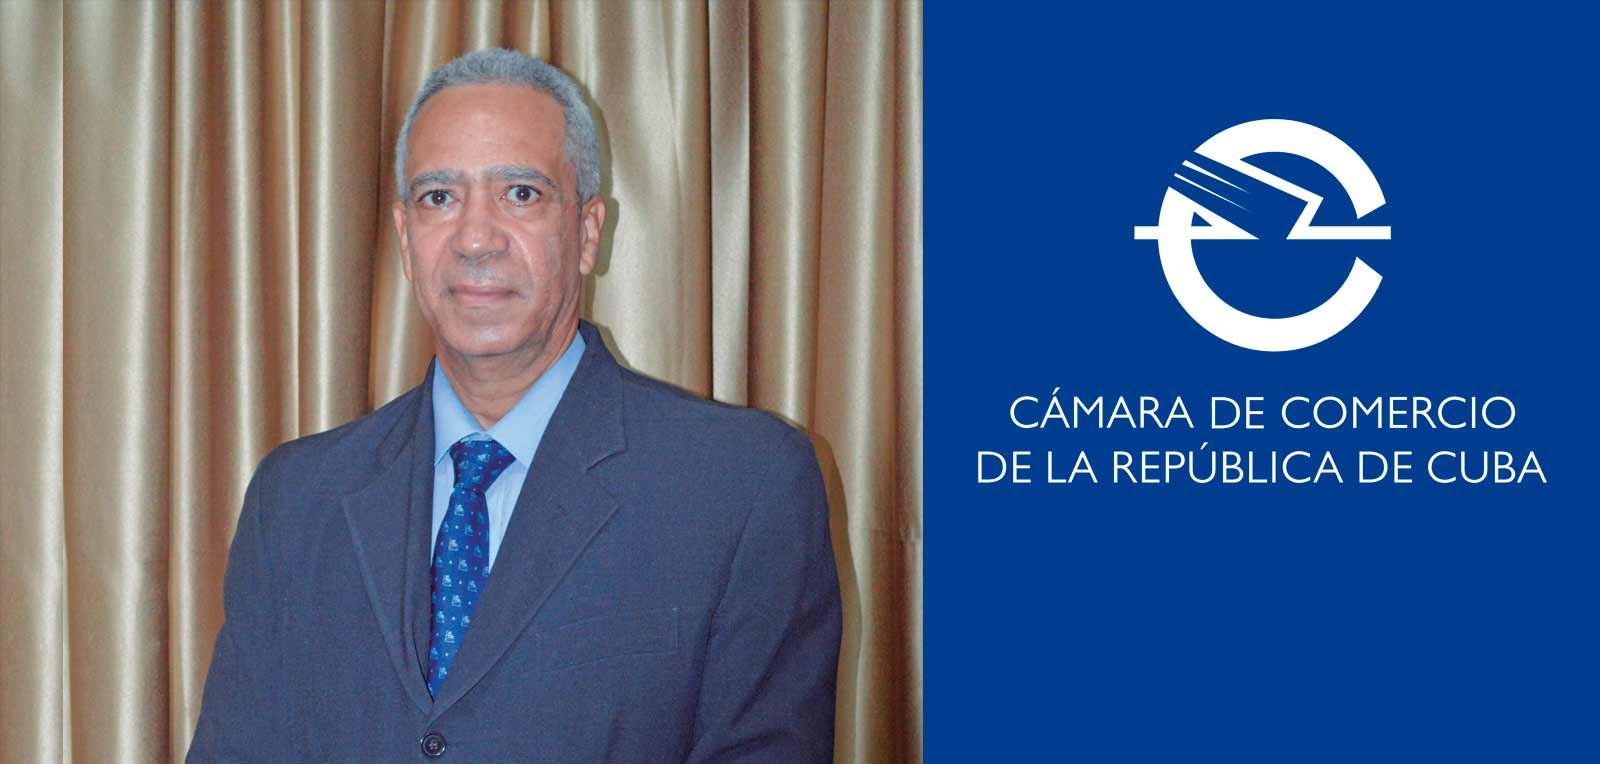 Entrevista exclusiva concedida por el presidente de la Cámara de Comercio de la República de Cuba